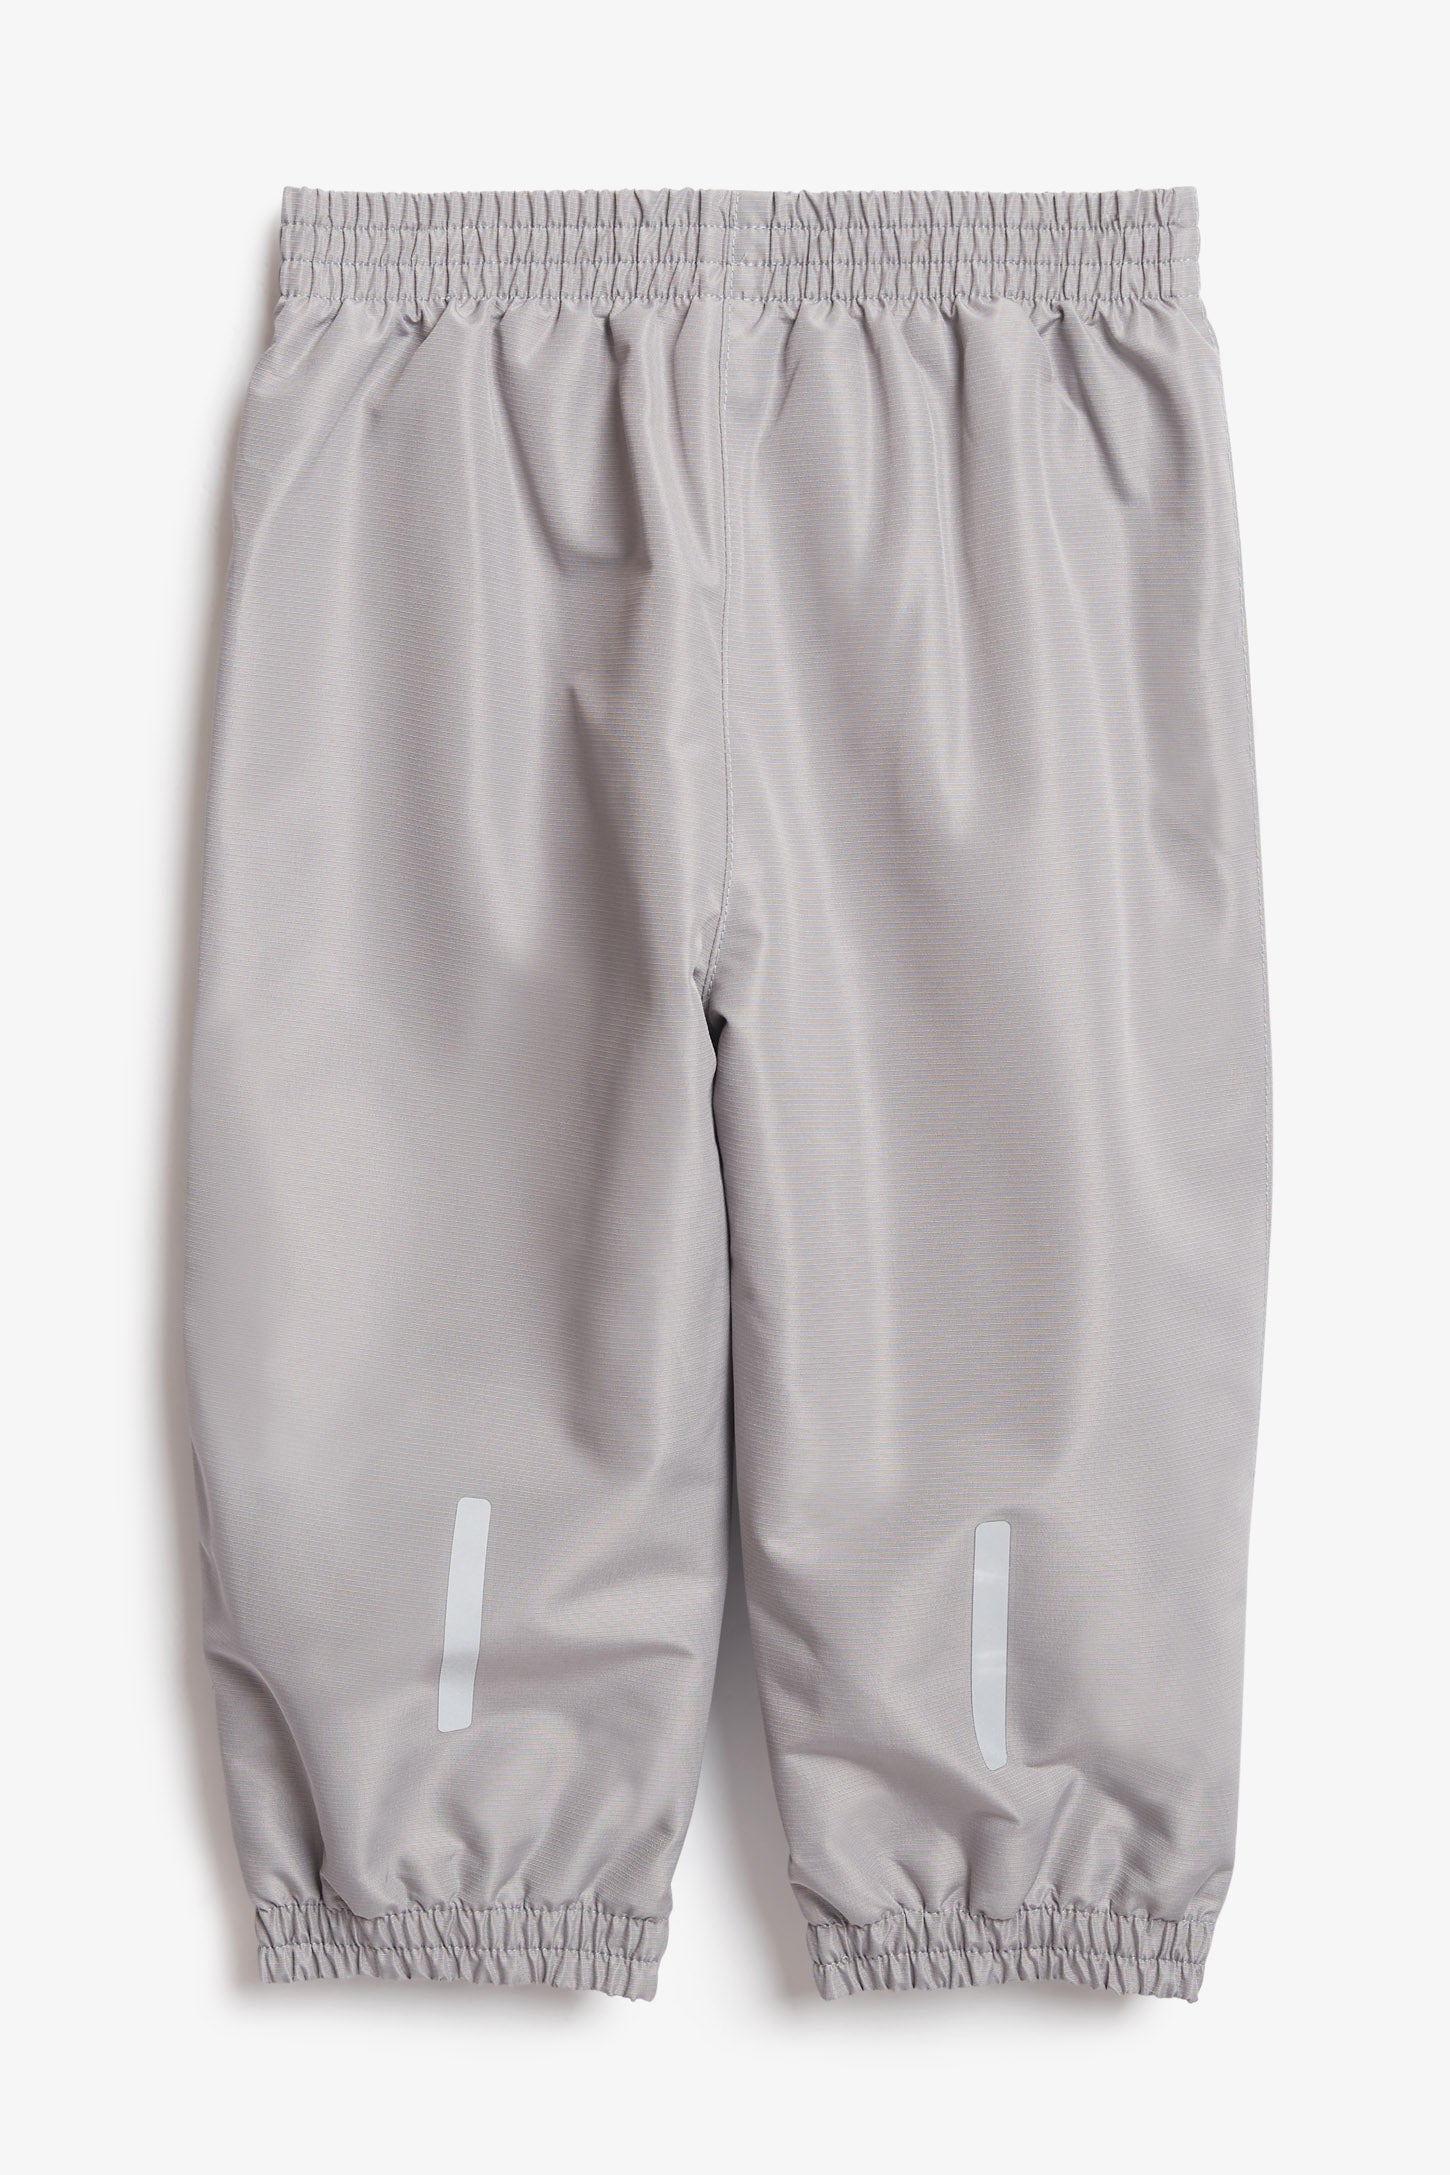 Pantalon d'extérieur doublé en jersey, 2T-3T - Bébé fille && GRIS